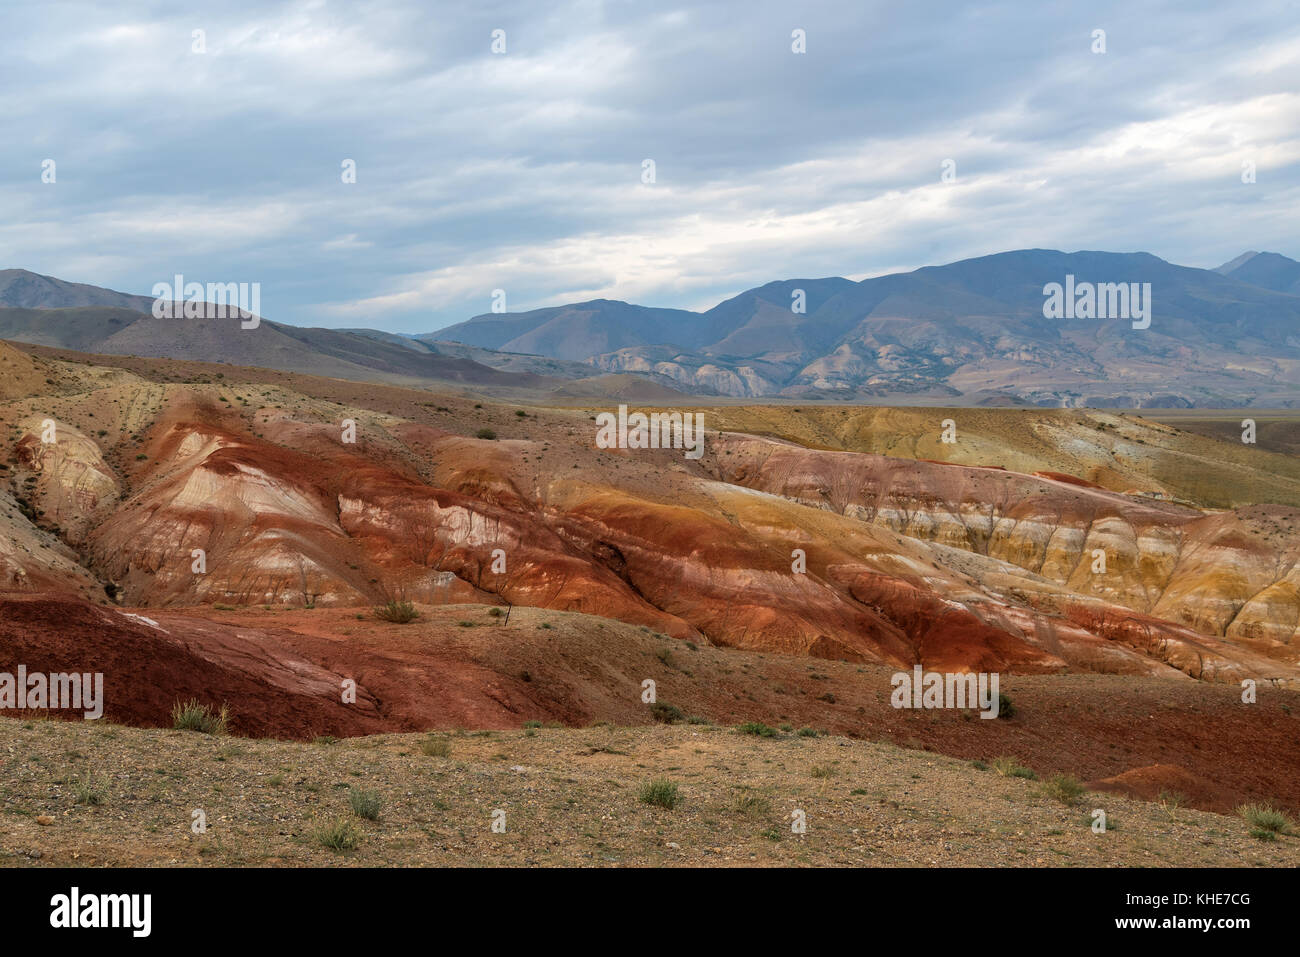 Steppa pittoresco paesaggio desertico con montagne multicolori, crepe nel suolo e vegetazione sparsa su uno sfondo di cielo nuvoloso Foto Stock